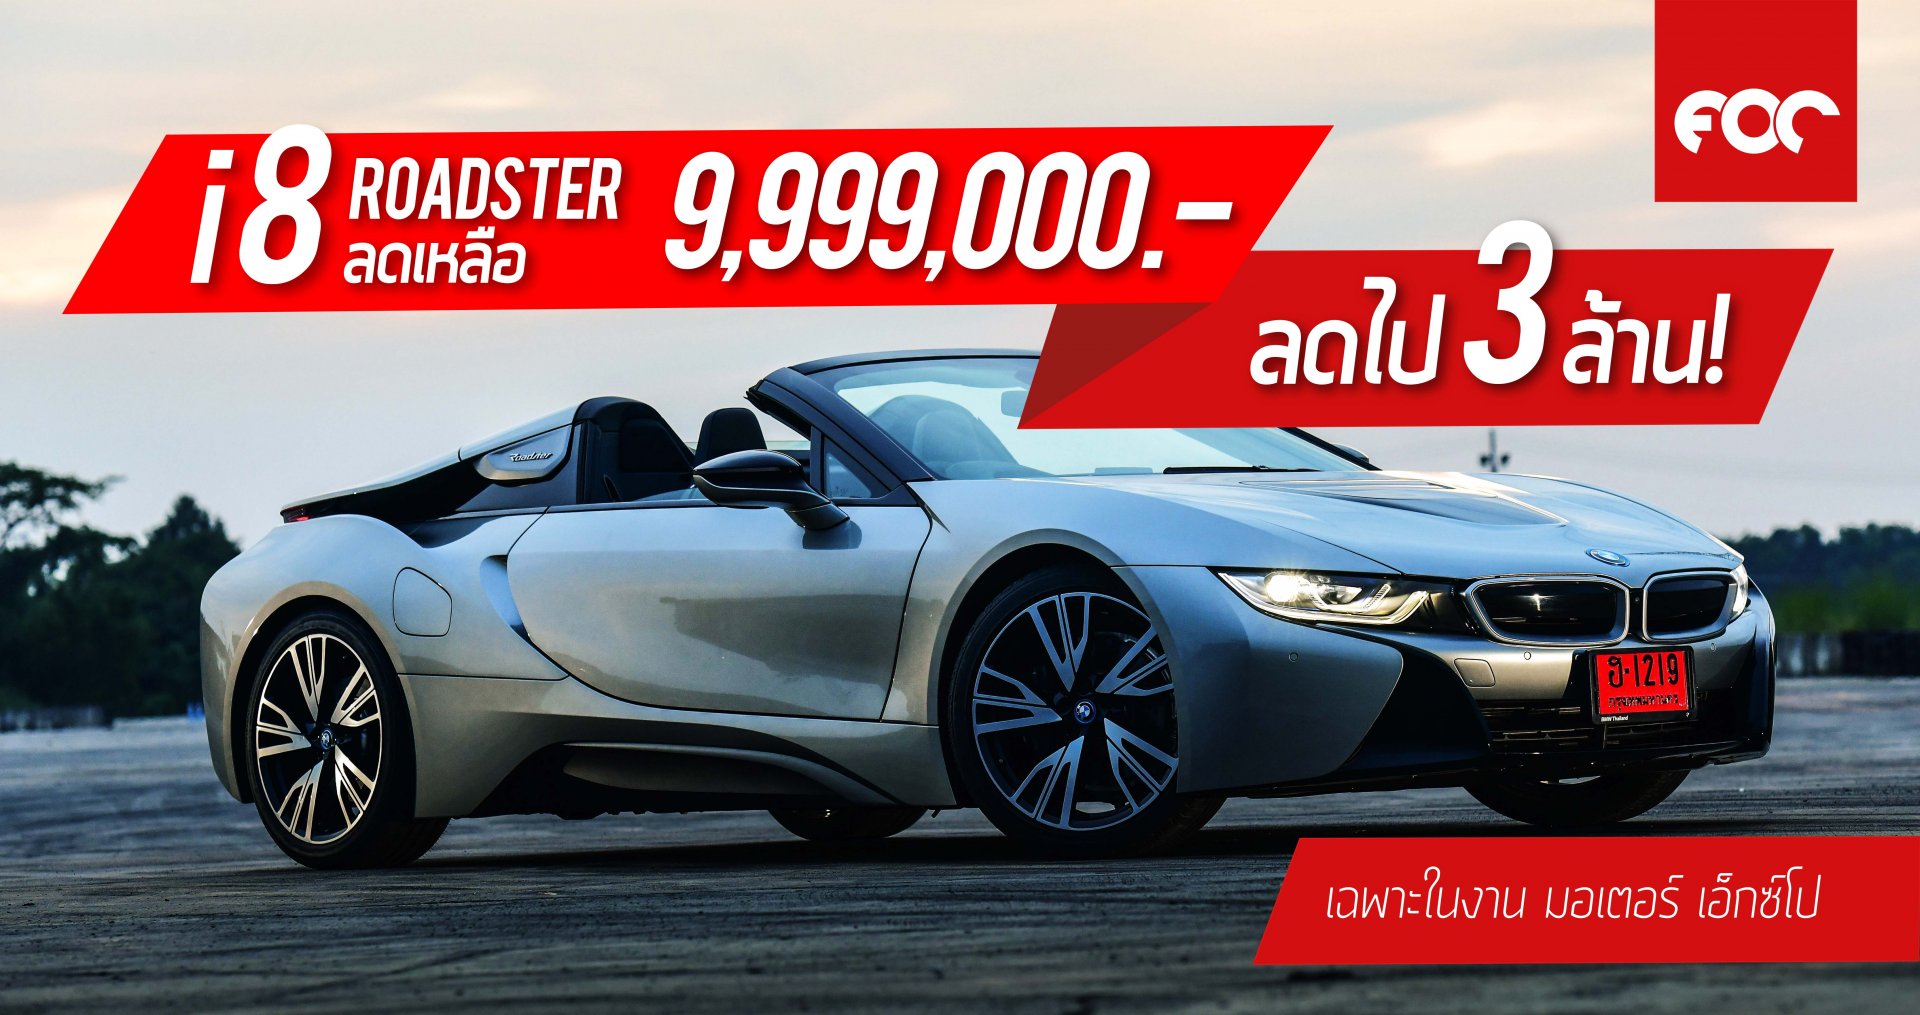 ลดทีมีอึ้ง! บีเอ็มดับเบิลยู i8 Roadster จำหน่ายพิเศษ 9,999,000 บาท ประหยัดไป 3ล้าน!